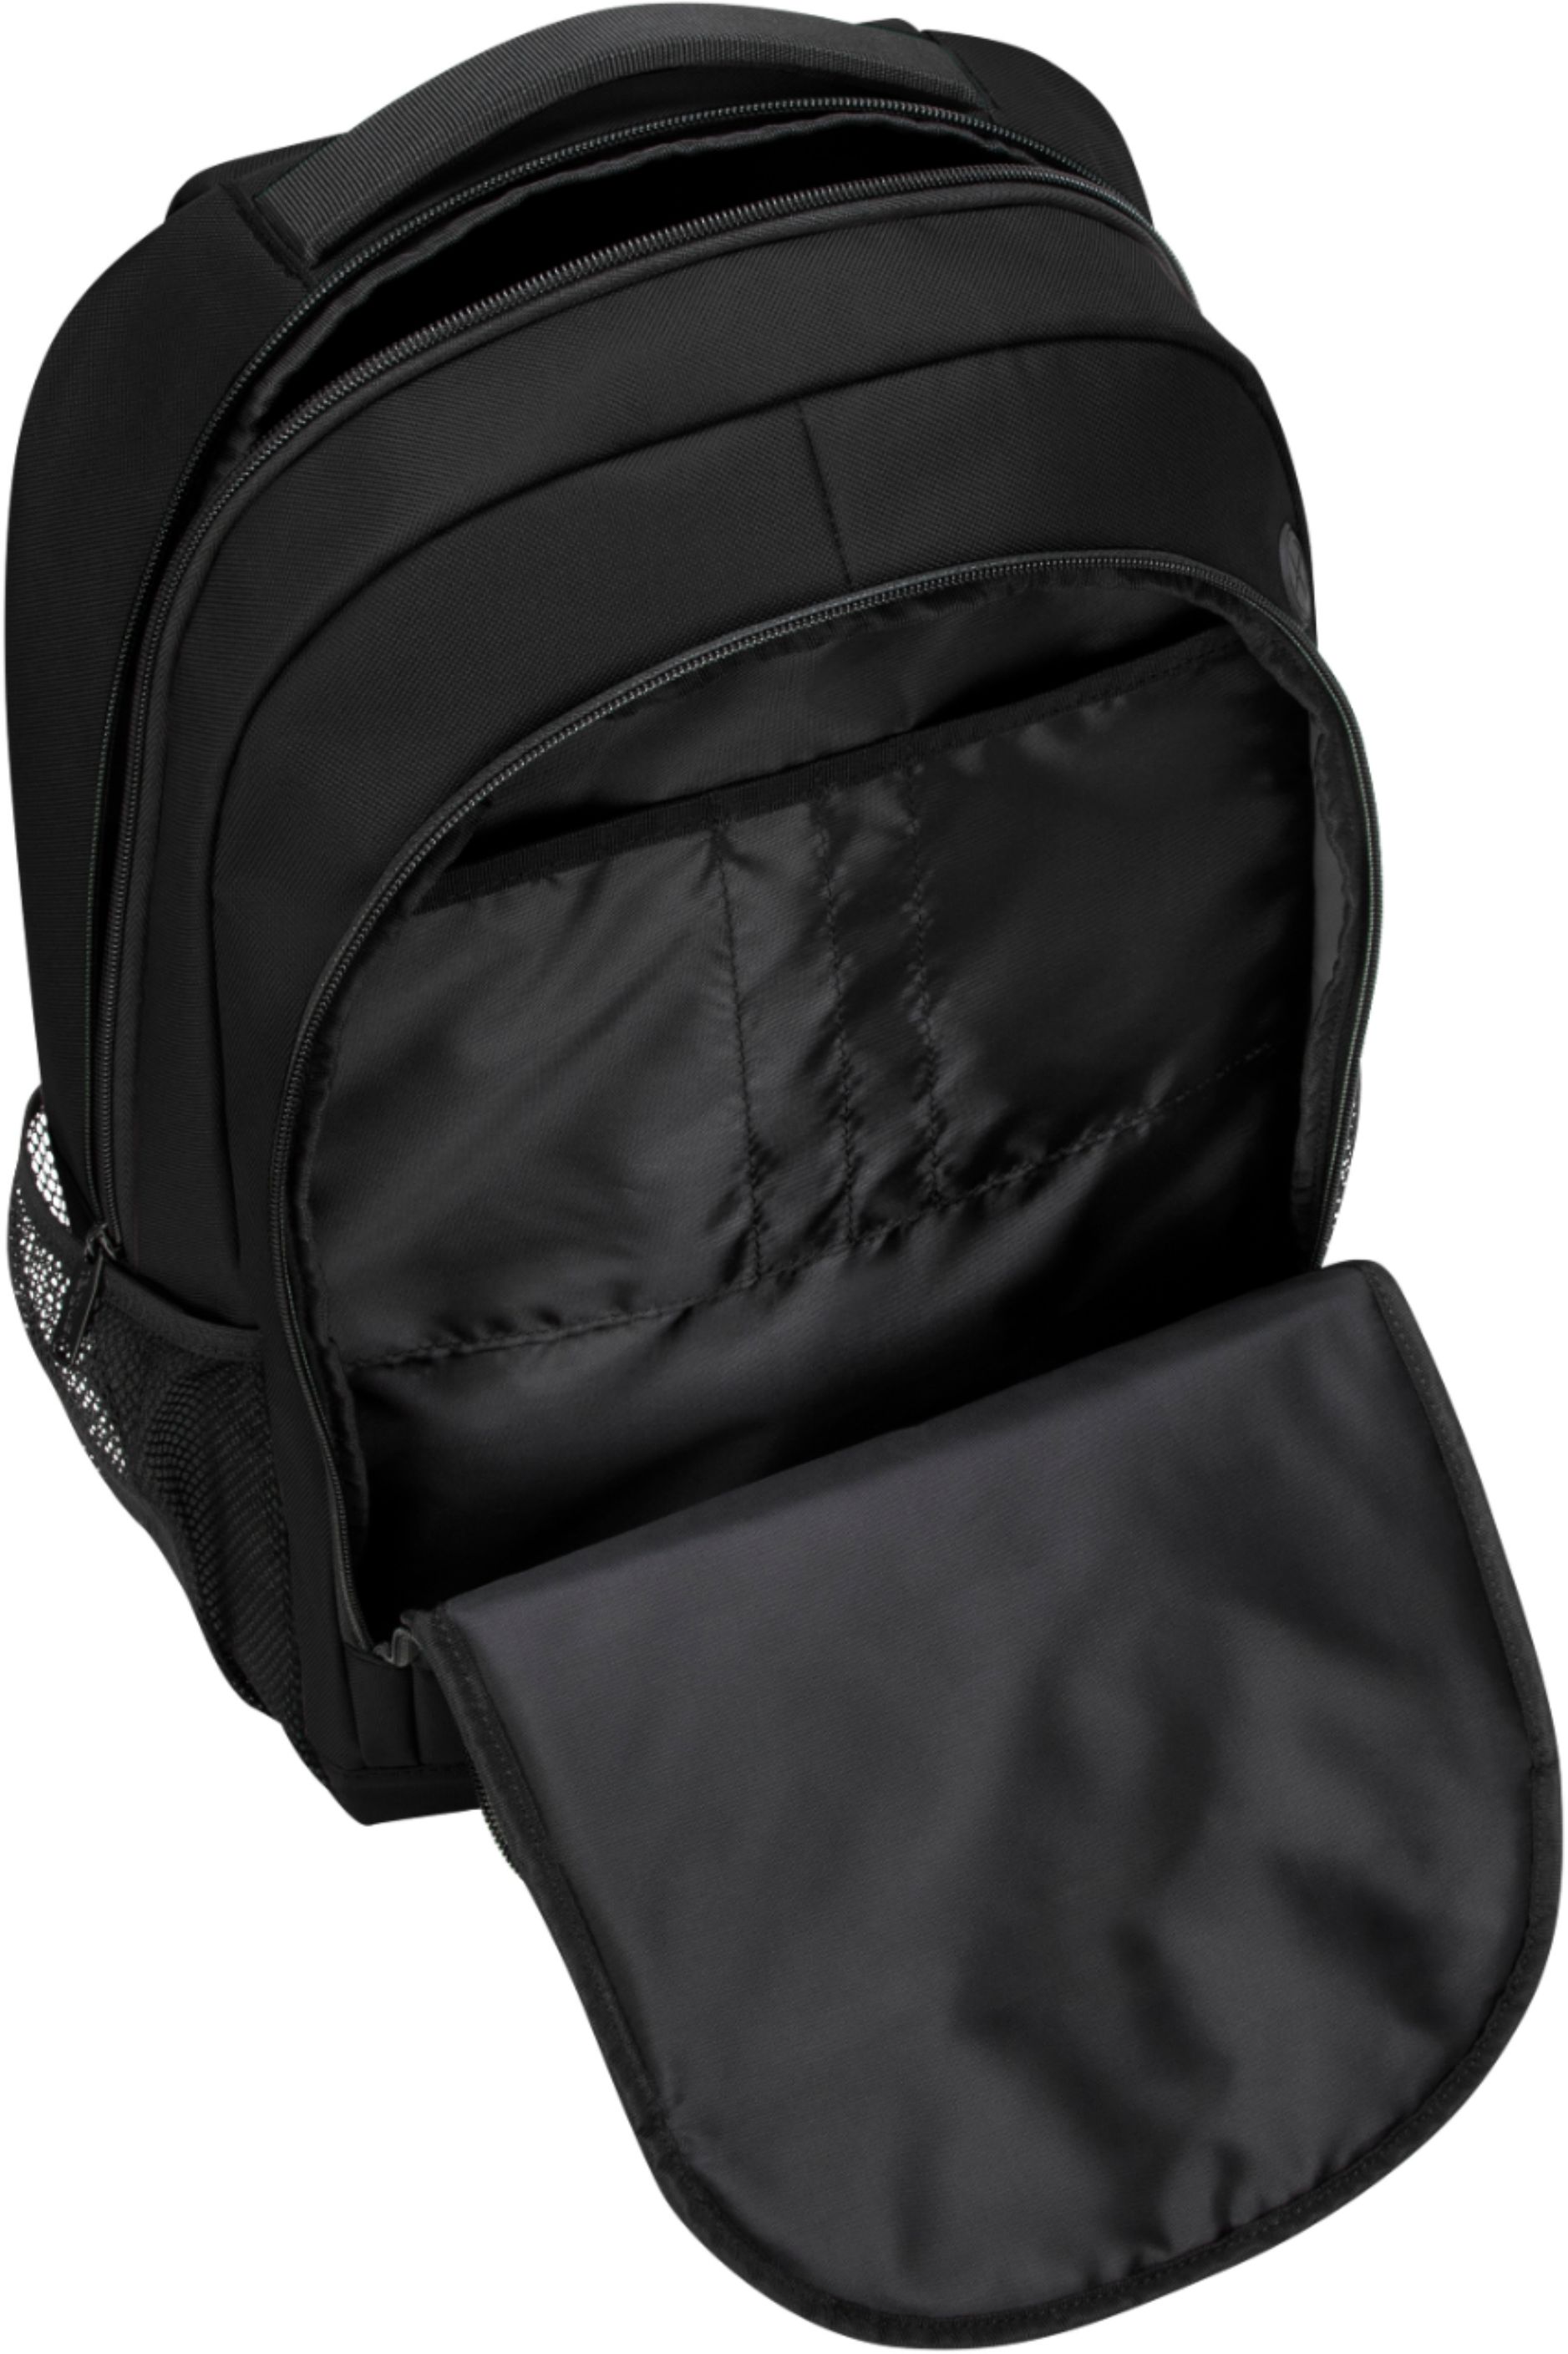 Targus Octave Backpack for 15.6” Laptops Black TBB593GL - Best Buy